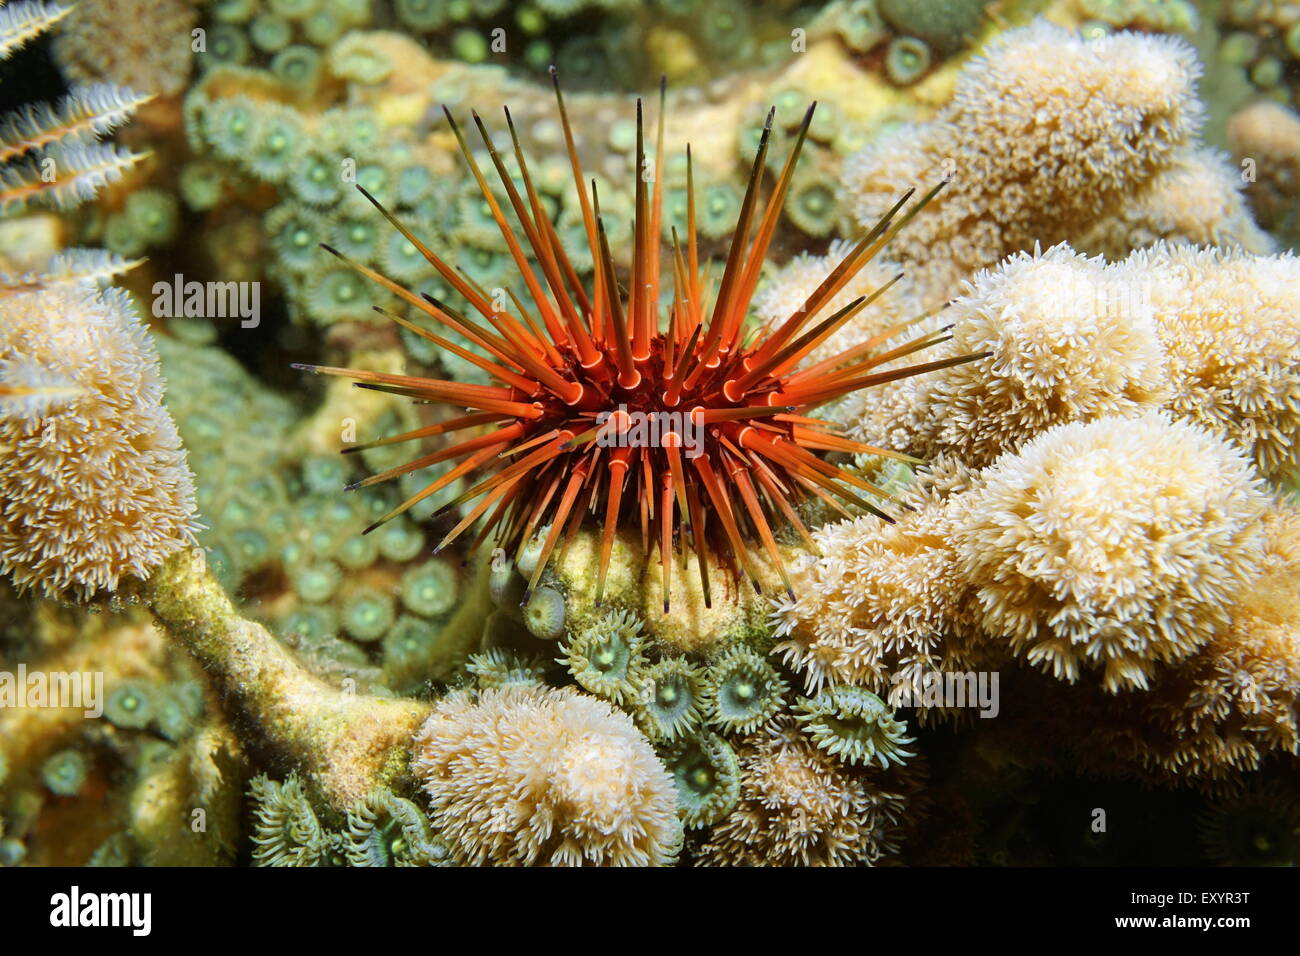 Underwater marine life, Echinometra viridis, commonly called reef urchin, Caribbean sea Stock Photo